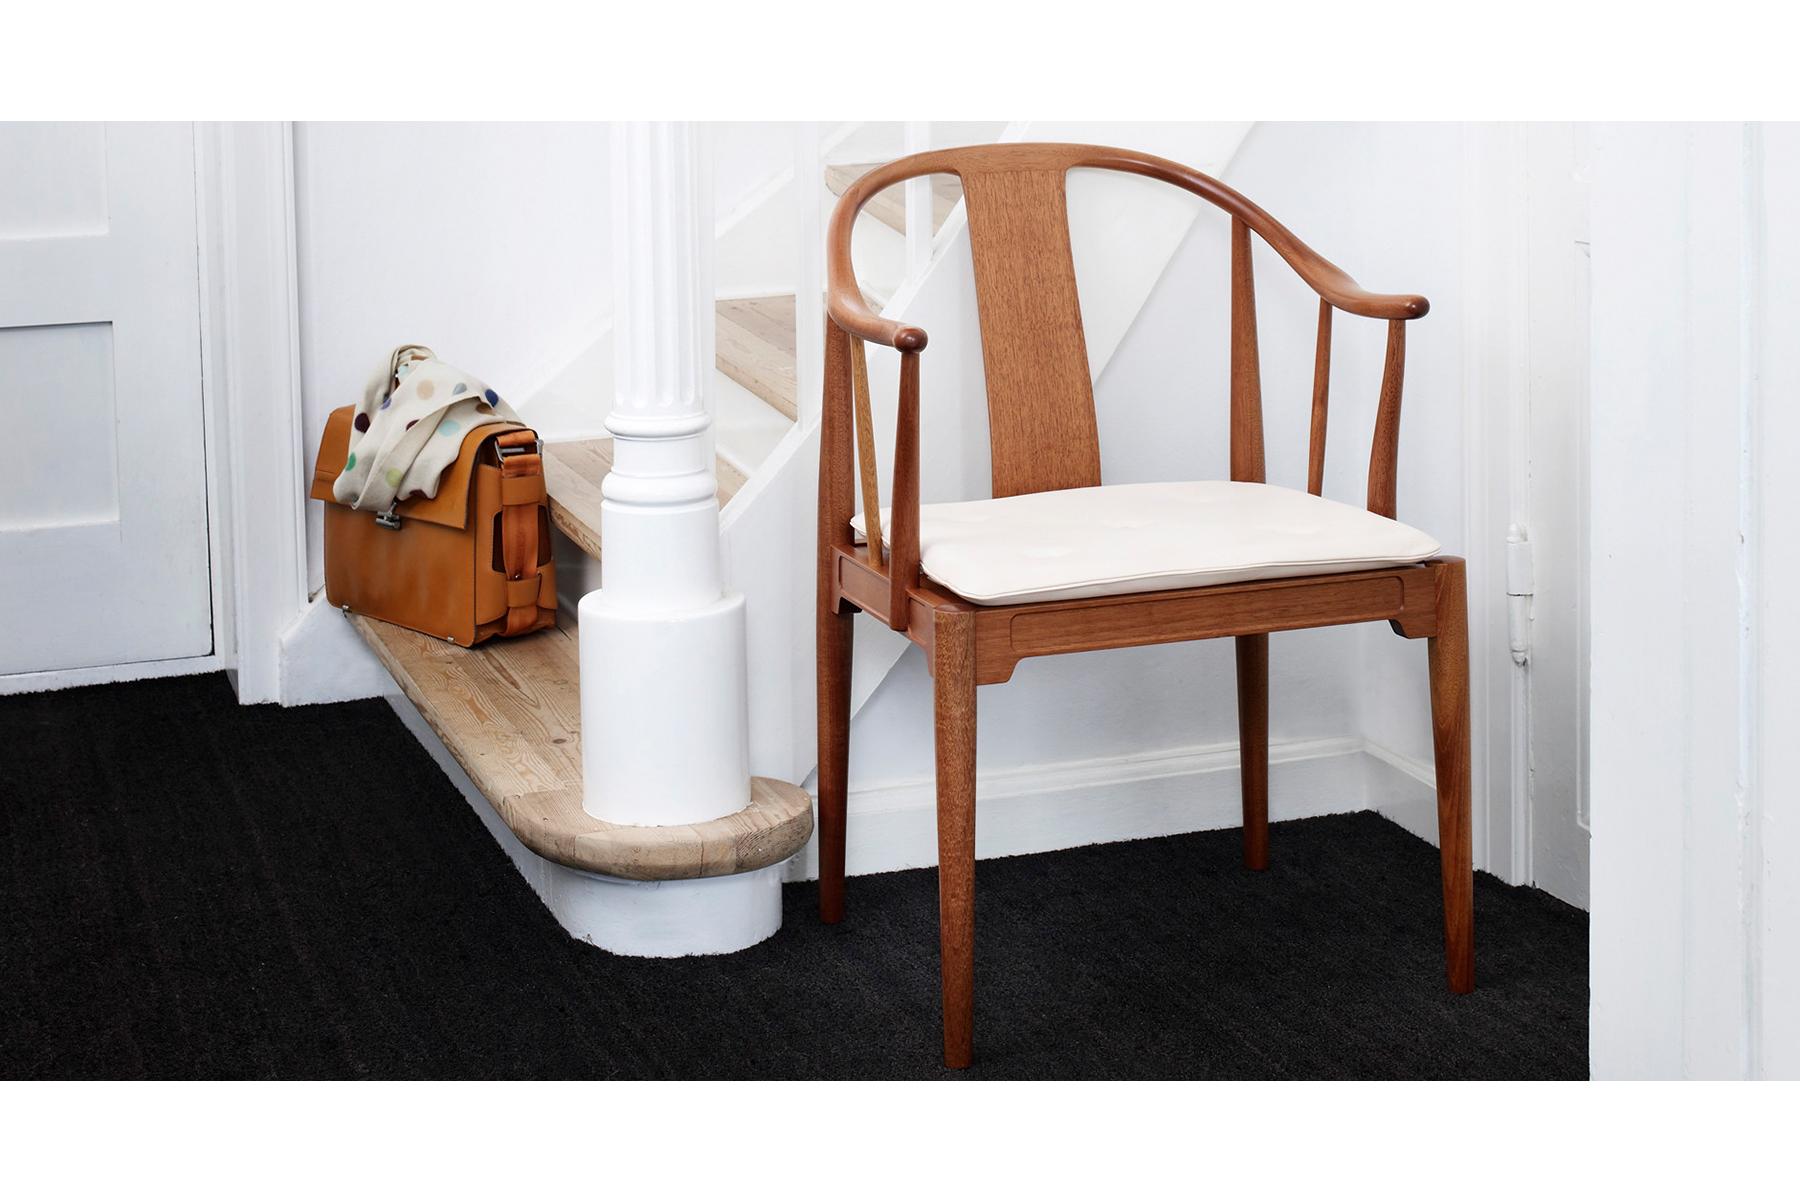 La chaise China a été conçue par Hans J. Wegner, en 1944, et elle se distingue comme étant la seule chaise en bois massif de la collection Fritz Hansen. Wegner s'est inspiré des chaises chinoises des 17e et 18e siècles pour créer ce classique